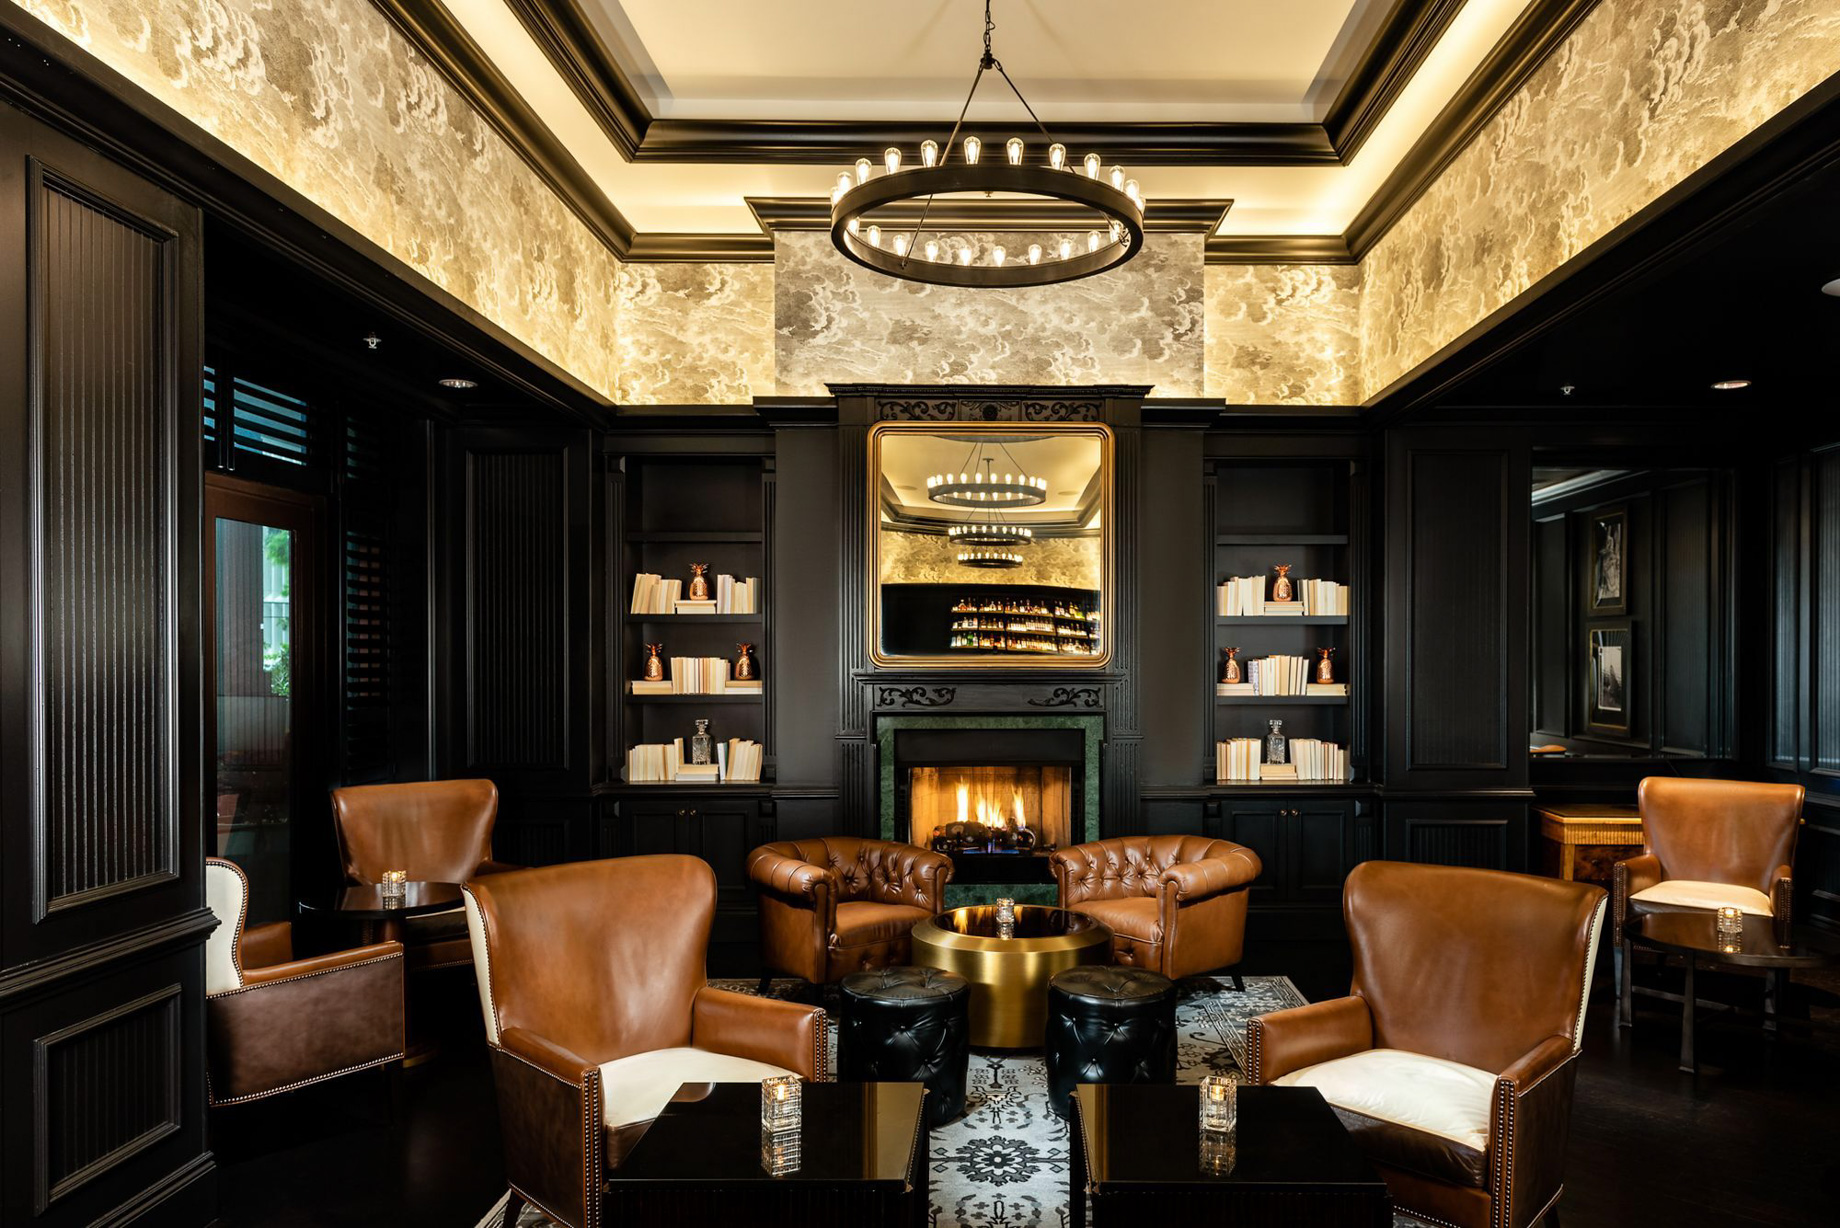 The Ritz-Carlton Coconut Grove, Miami Hotel – Miami, FL, USA – The Commodore Bar